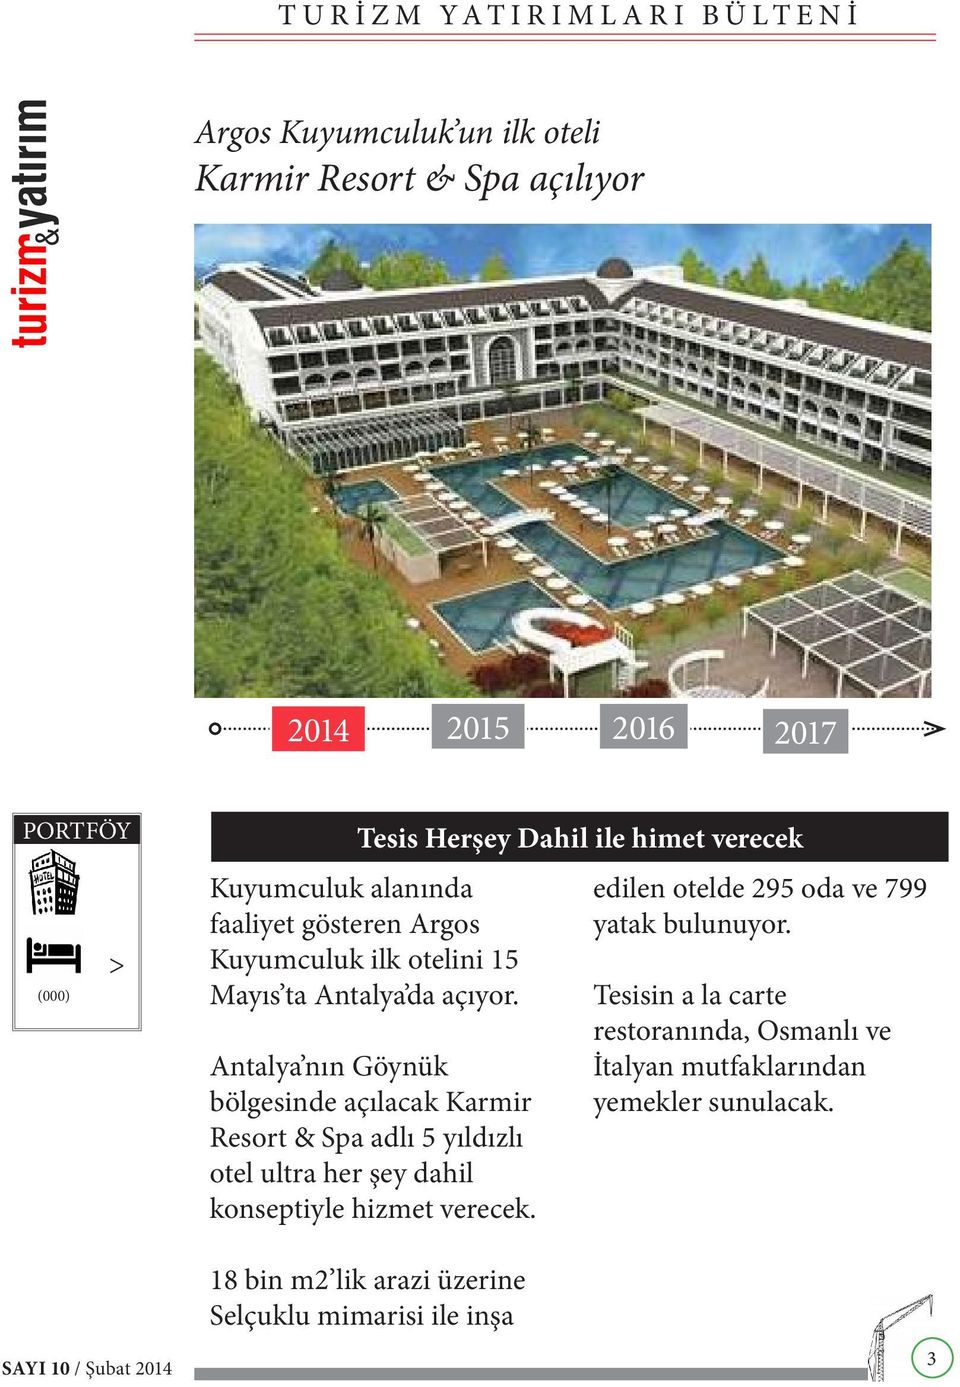 Antalya nın Göynük bölgesinde açılacak Karmir Resort & Spa adlı 5 yıldızlı otel ultra her şey dahil konseptiyle hizmet verecek.